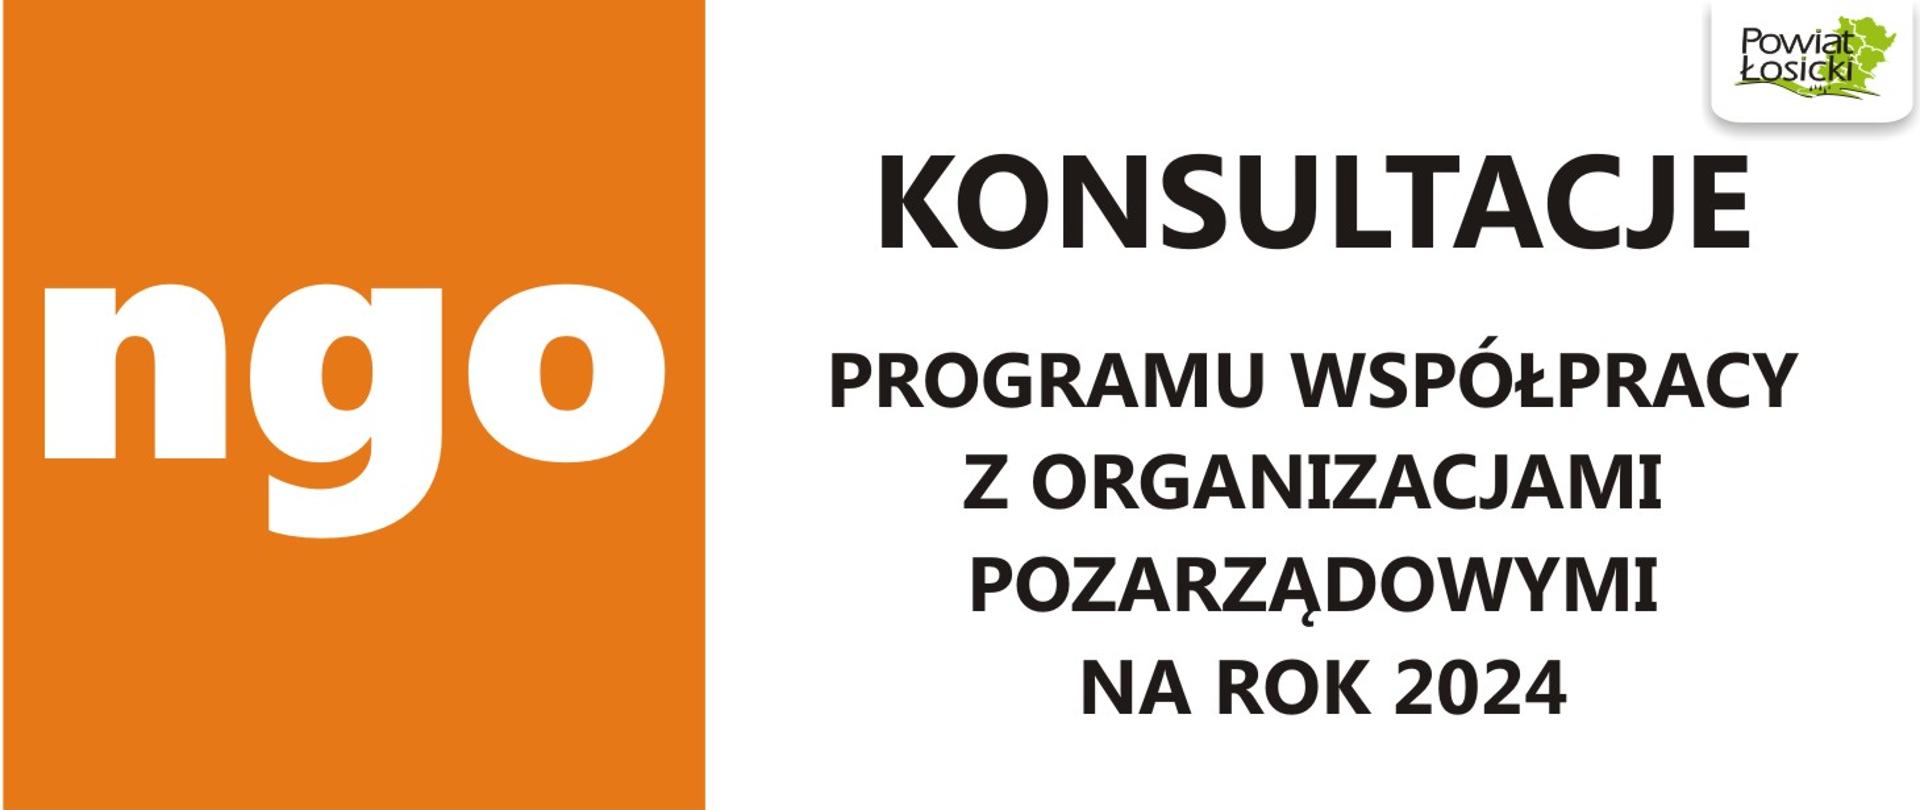 Ogłoszenie o przeprowadzeniu konsultacji Programu współpracy Powiatu Łosickiego z organizacjami pozarządowymi na rok 2024